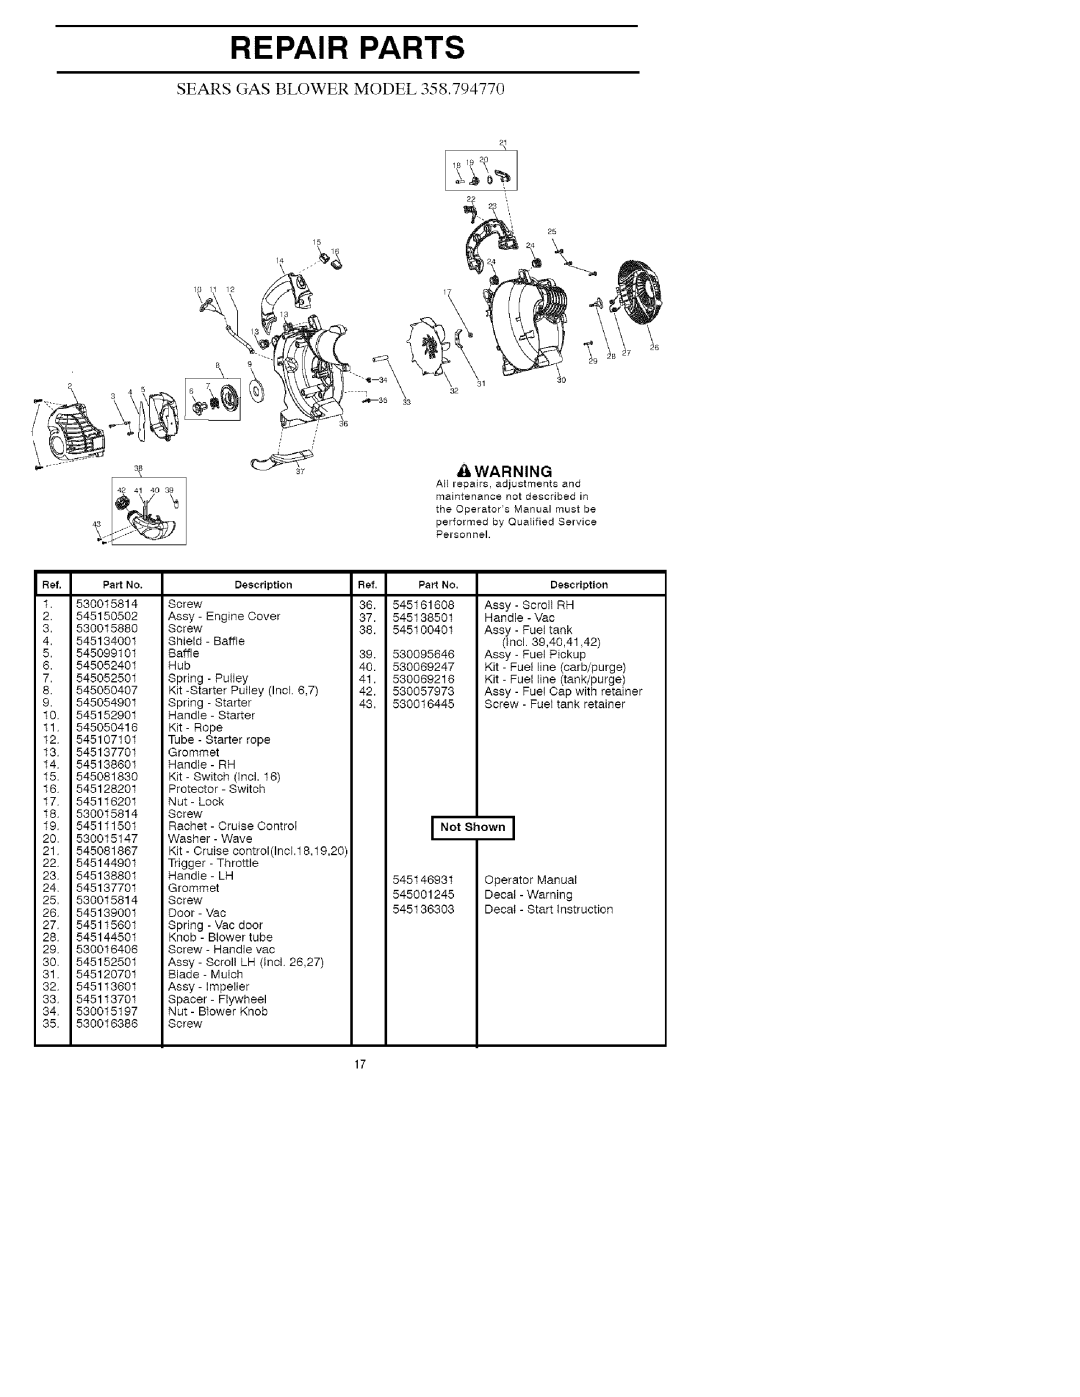 Craftsman 358.79477 manual Repair Parts, Sears Gas Blower Model 